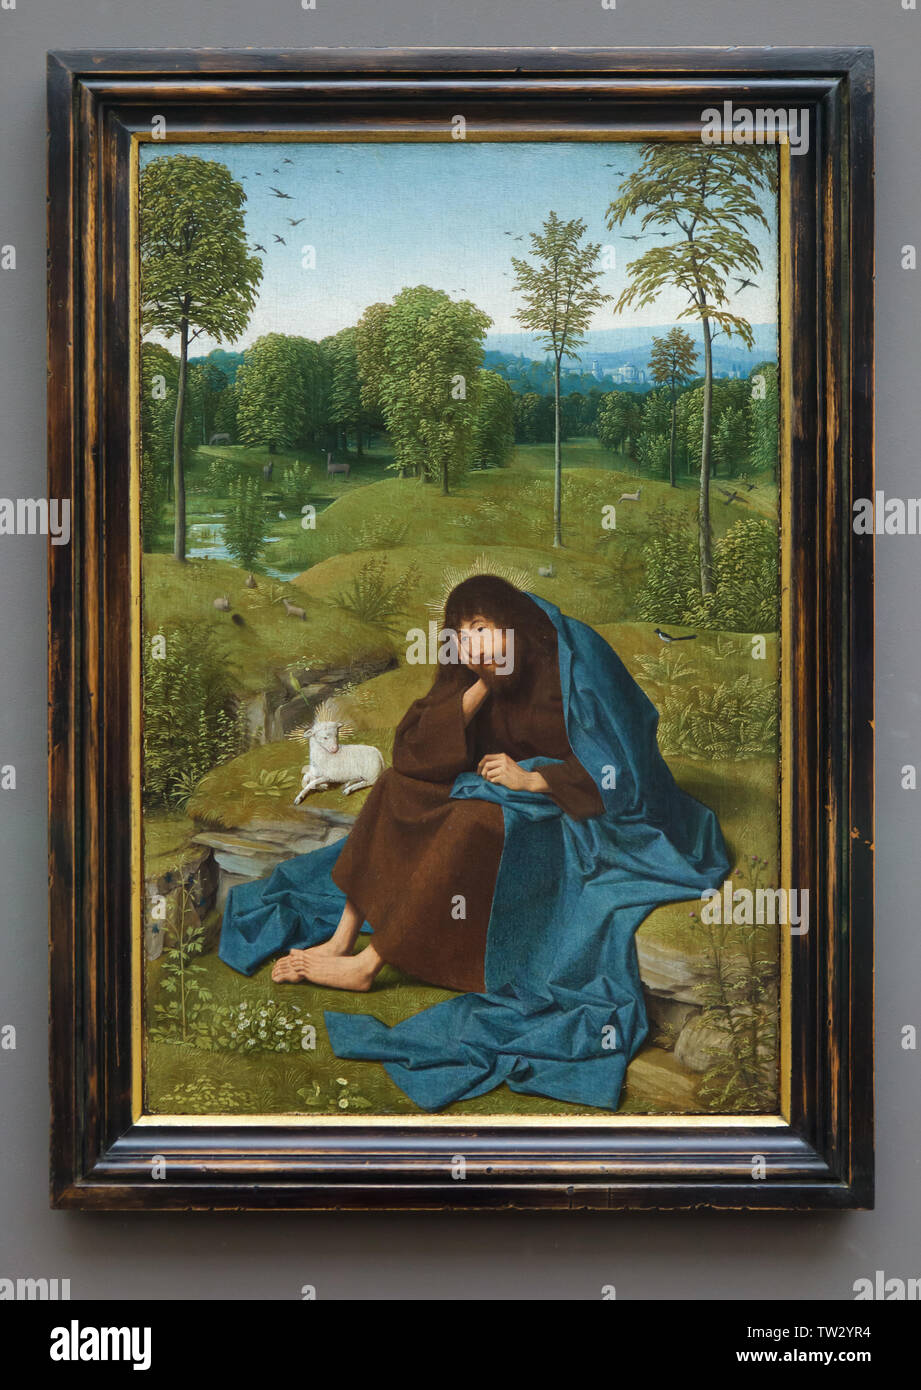 La peinture 'Saint Jean le Baptiste dans le désert' par Dutch Début peintre Geertgen tot Sint Jans (1484) sur l'affichage dans le Berliner Gemäldegalerie (Berlin Photo Gallery) à Berlin, Allemagne. Banque D'Images